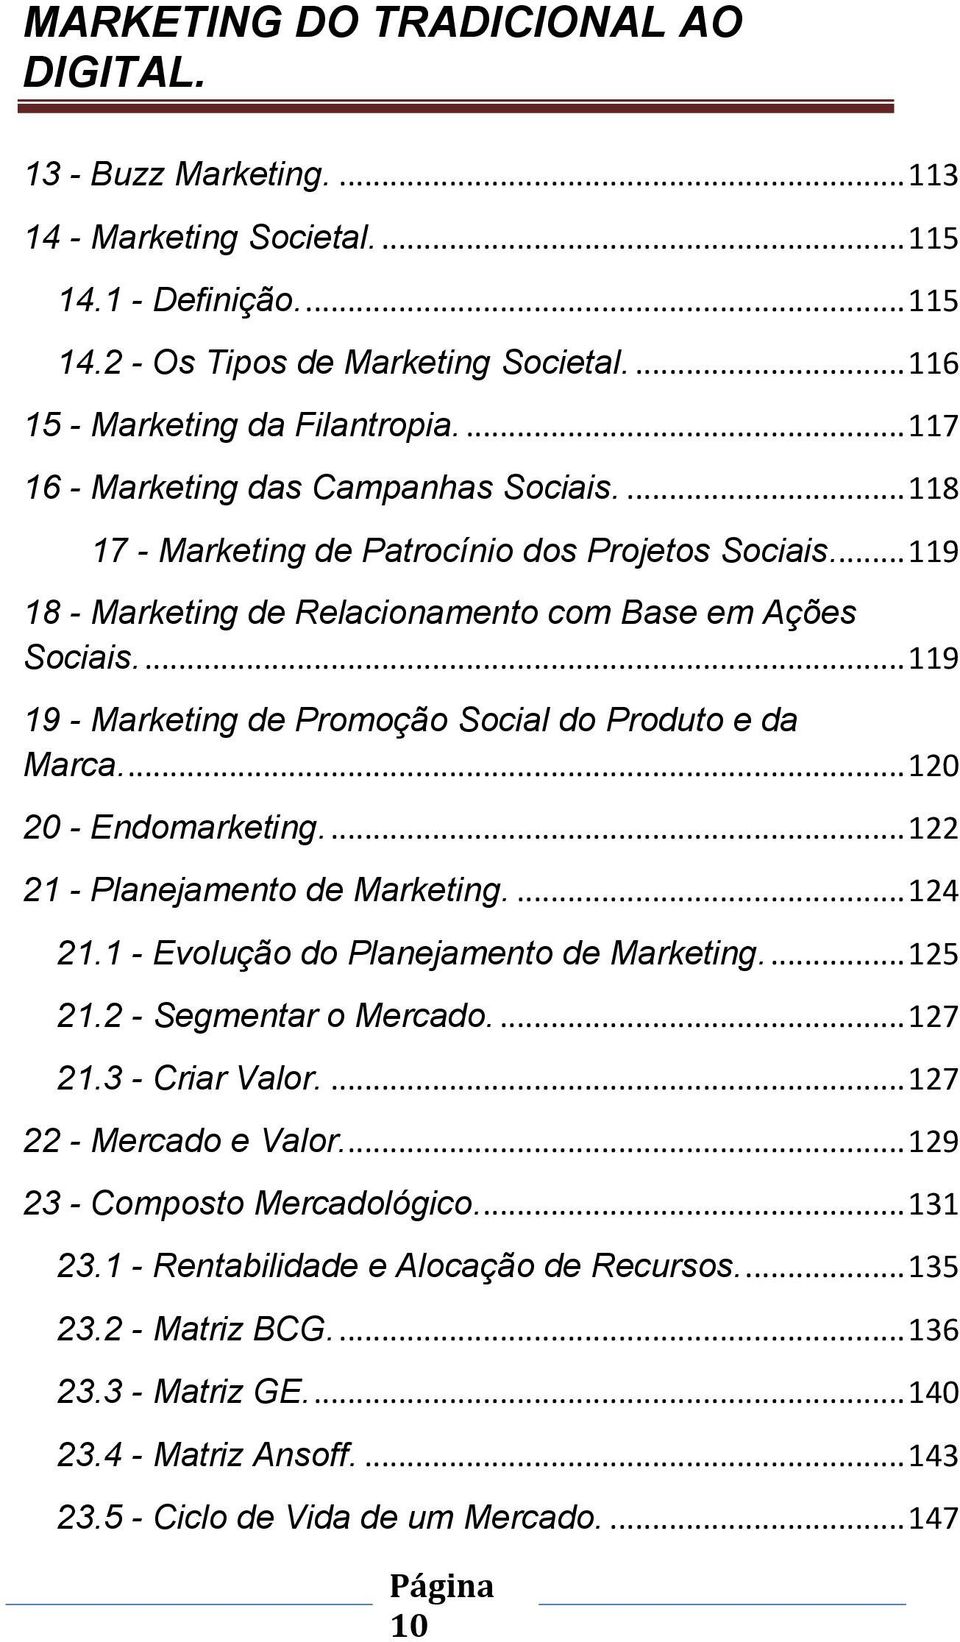 ... 119 19 - Marketing de Promoção Social do Produto e da Marca.... 120 20 - Endomarketing.... 122 21 - Planejamento de Marketing.... 124 21.1 - Evolução do Planejamento de Marketing.... 125 21.